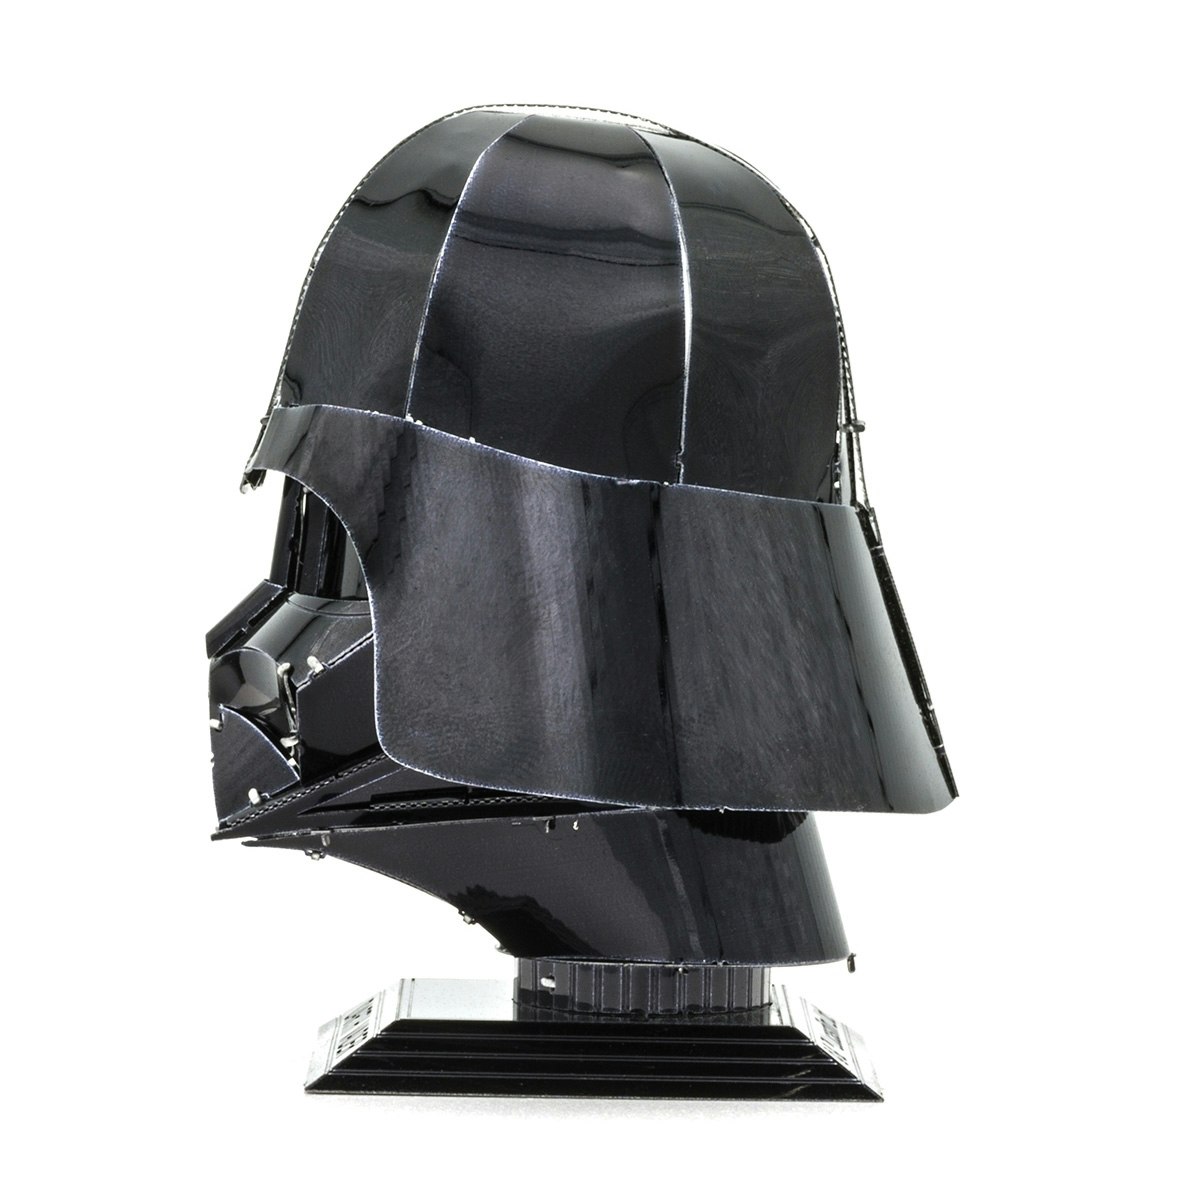 Byggesett Star Wars Darth Vader Helmet